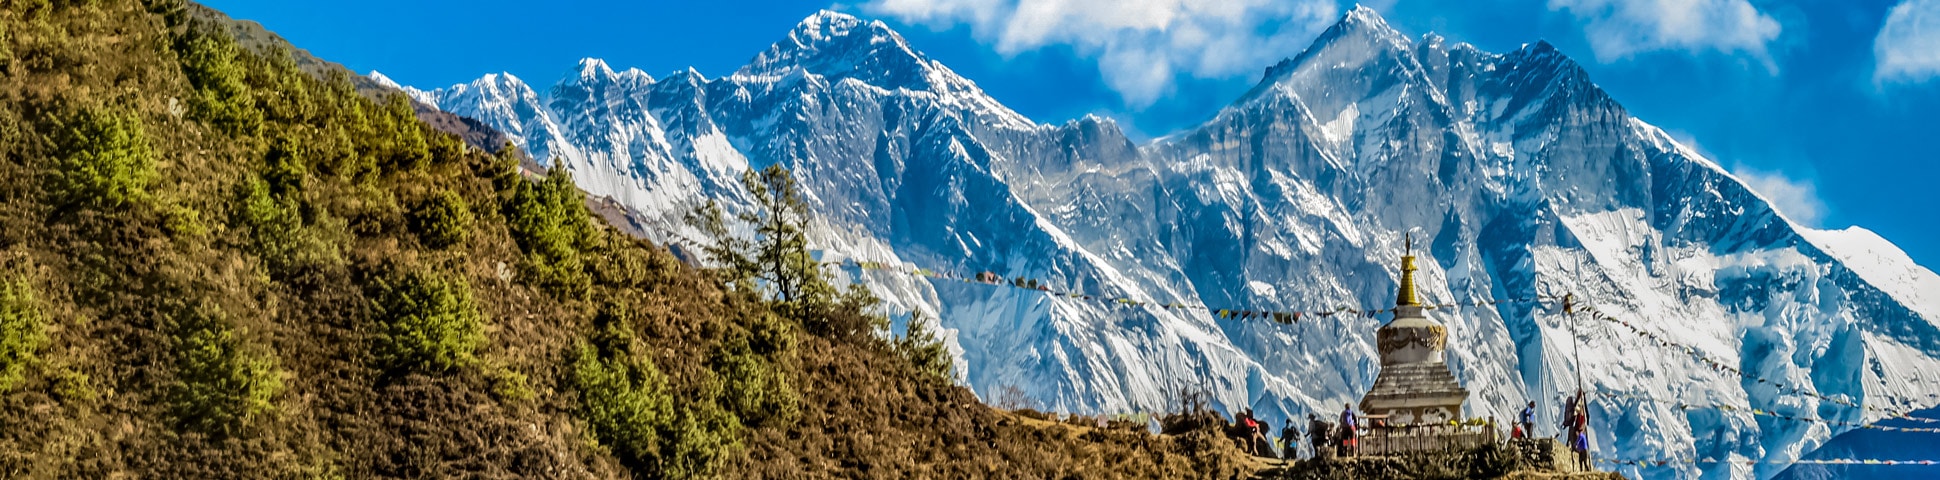 Himalaya Mountains in Nepal